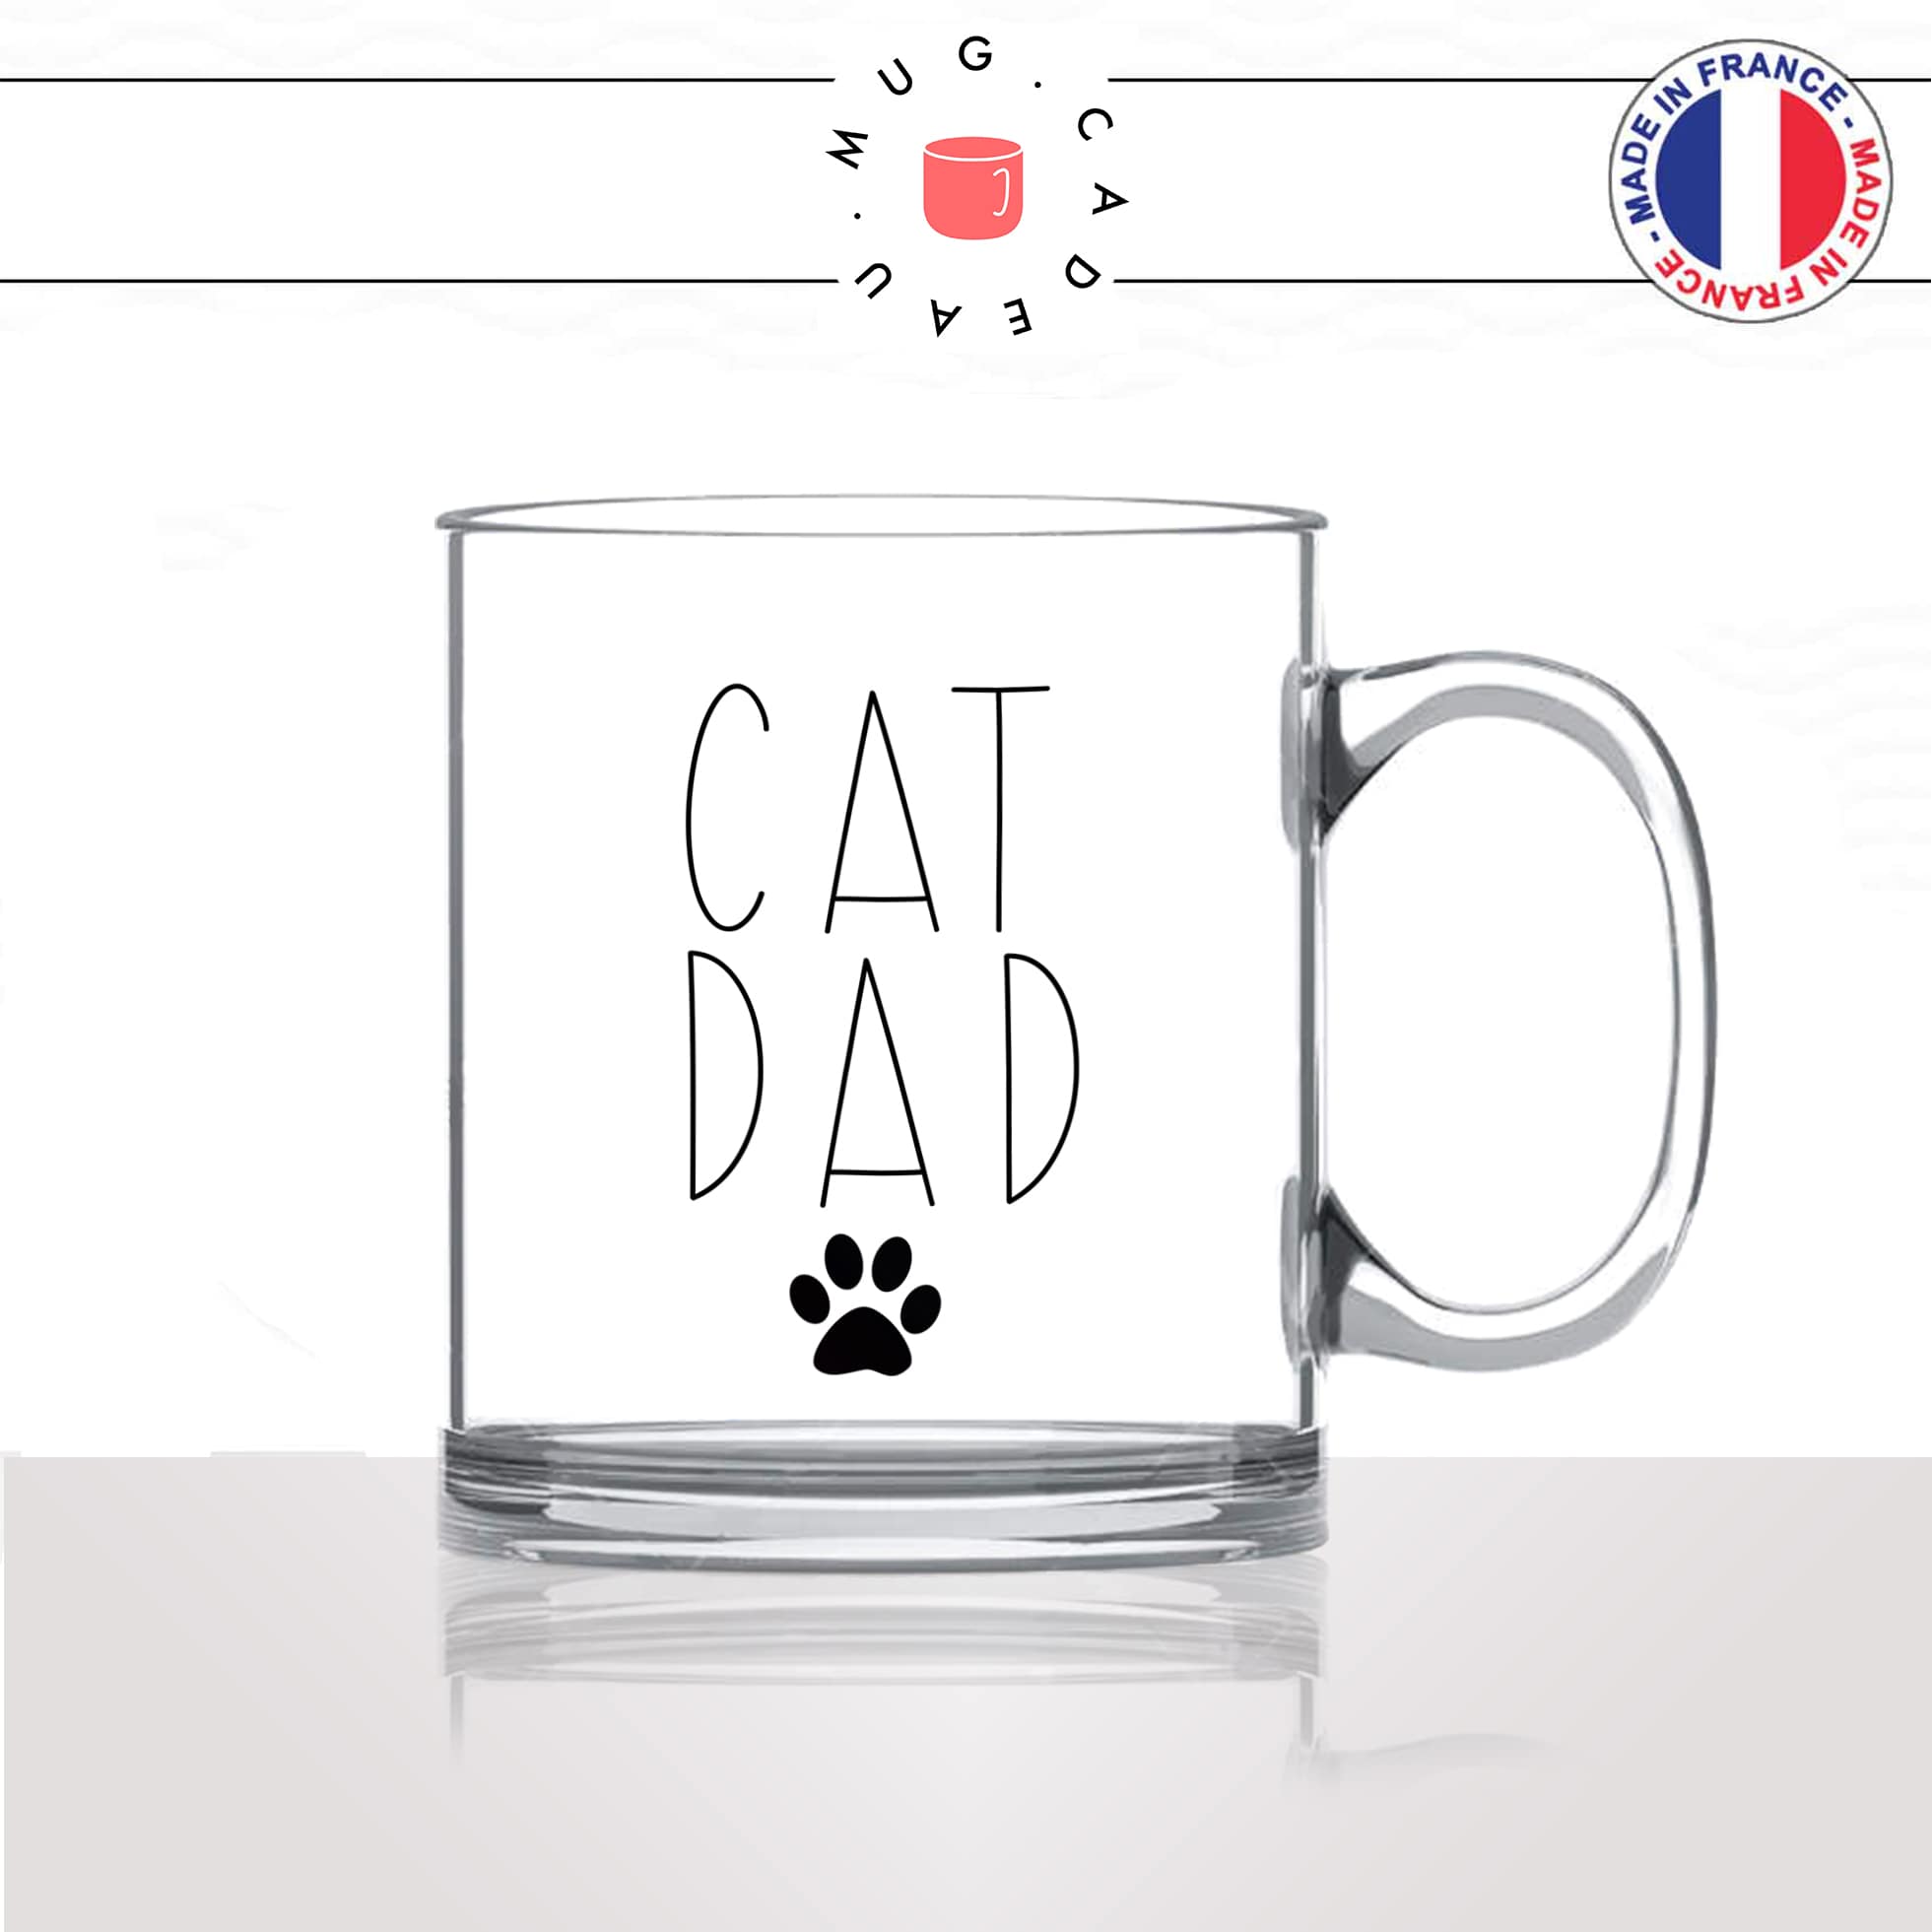 mug-tasse-en-verre-transparent-glass-déco-cat-dad-papa-chats-mignon-animal-chaton-dessin-noir-fun-café-thé-idée-cadeau-original-personnalisable2-min